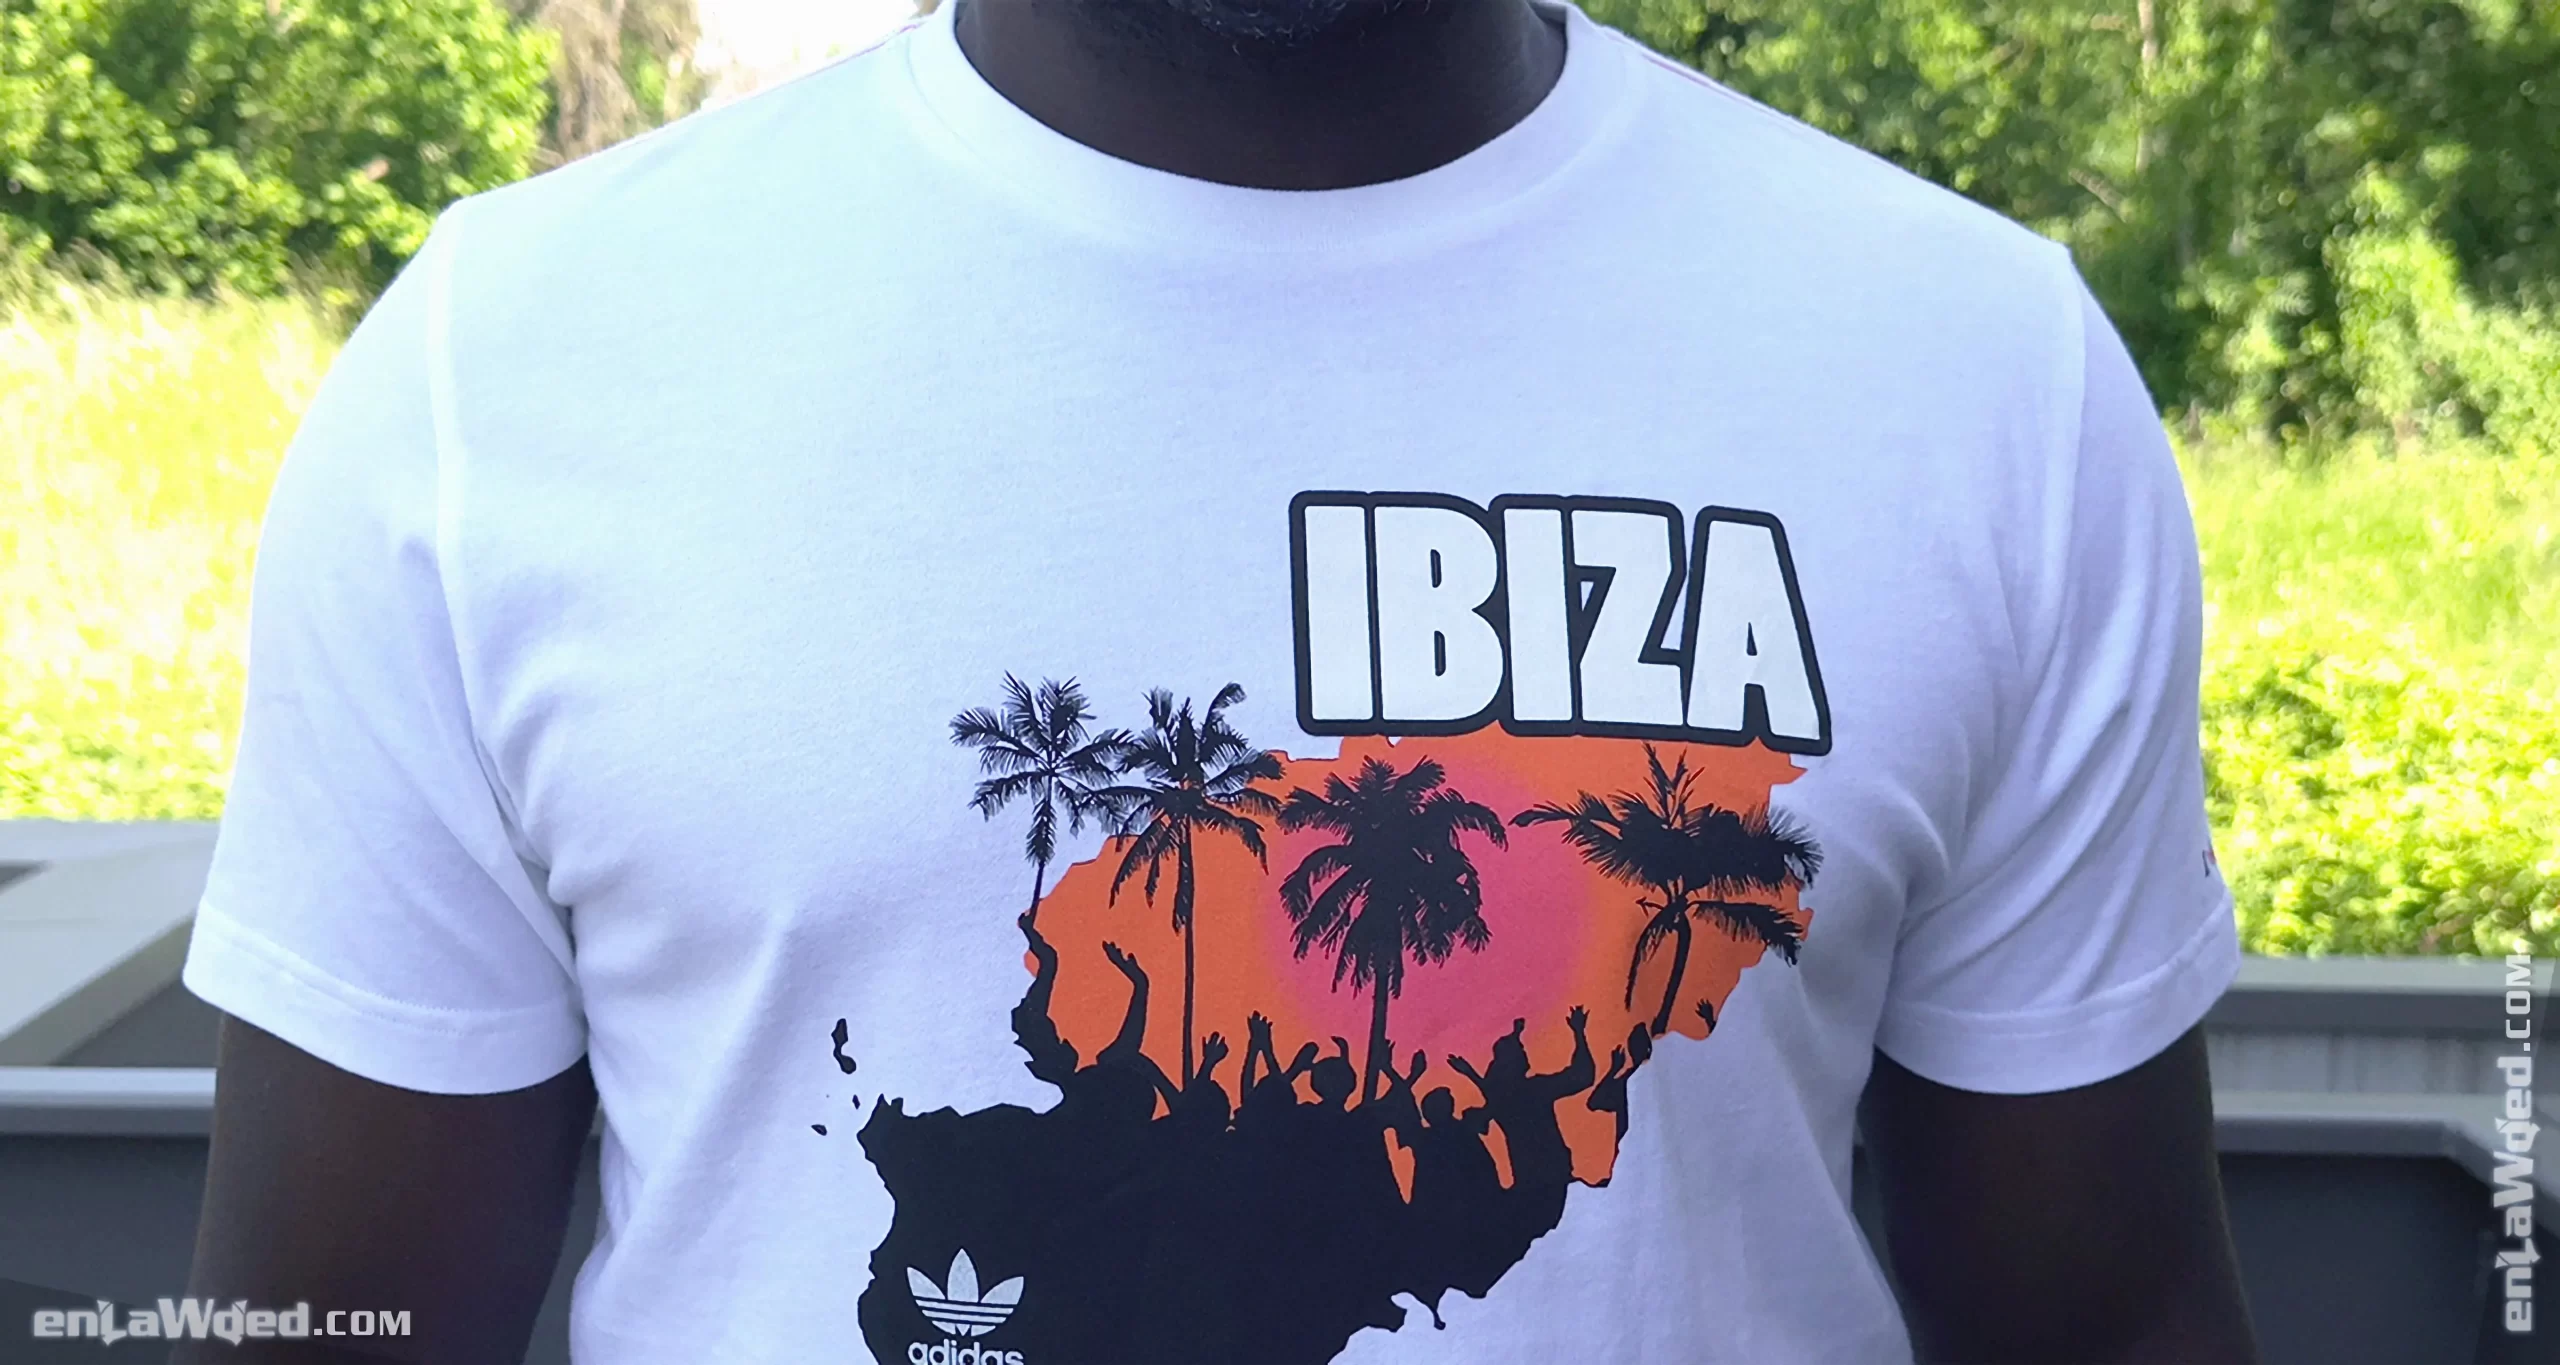 Men’s 2007 Ibiza T-Shirt by Adidas Originals: Ignite (EnLawded.com file #lmc5pde8dp5lnwt48iu)